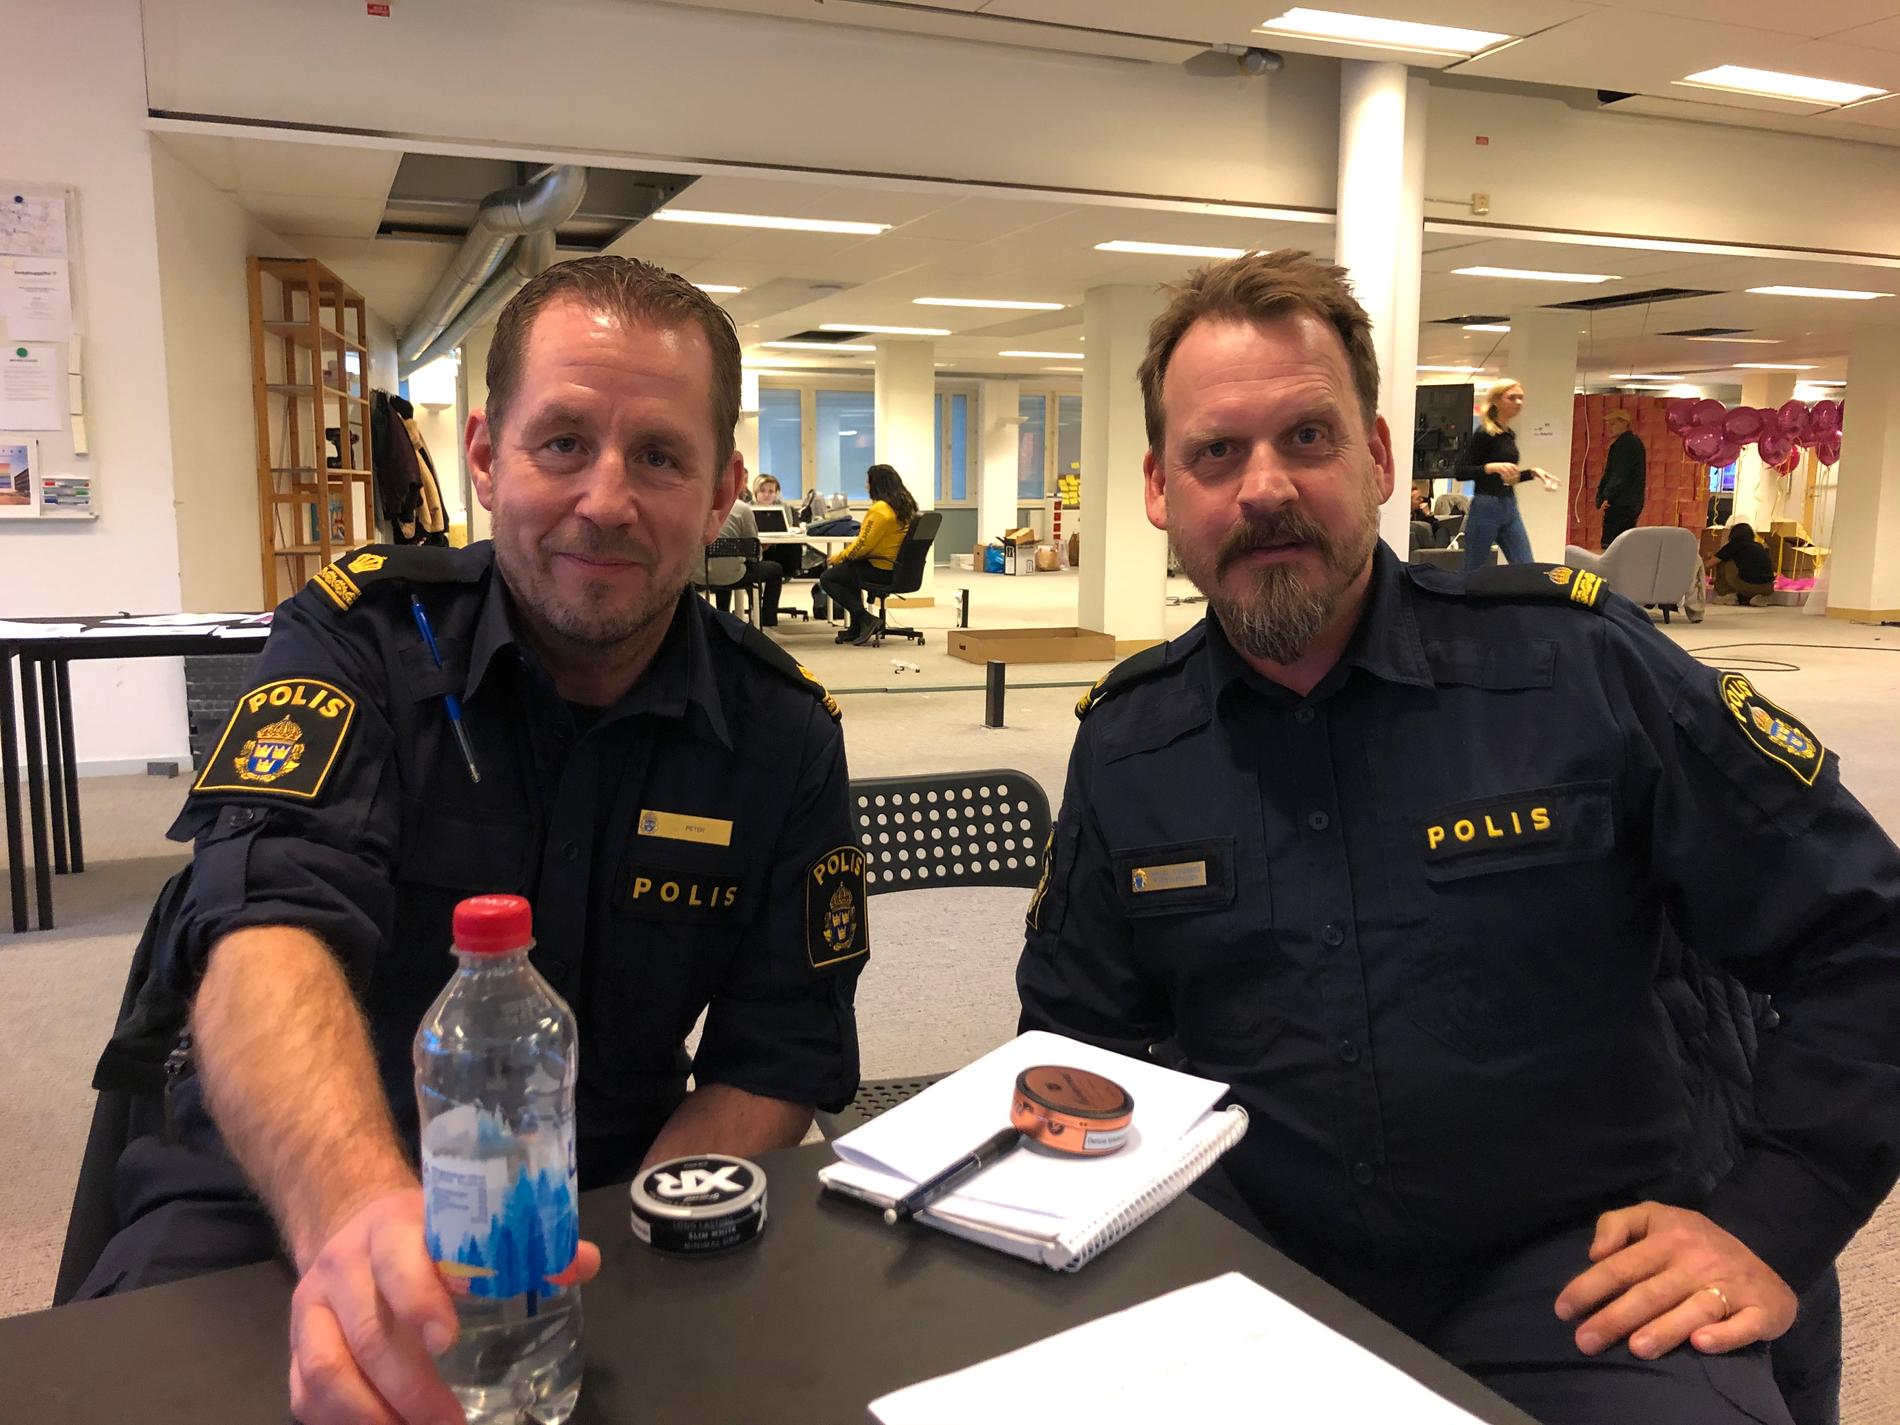 Polisinspektörerna Peter Aasa och Mikael Sundberg vid Farstapolisen har gått igenom de nya "Big brother"-lokalerna.